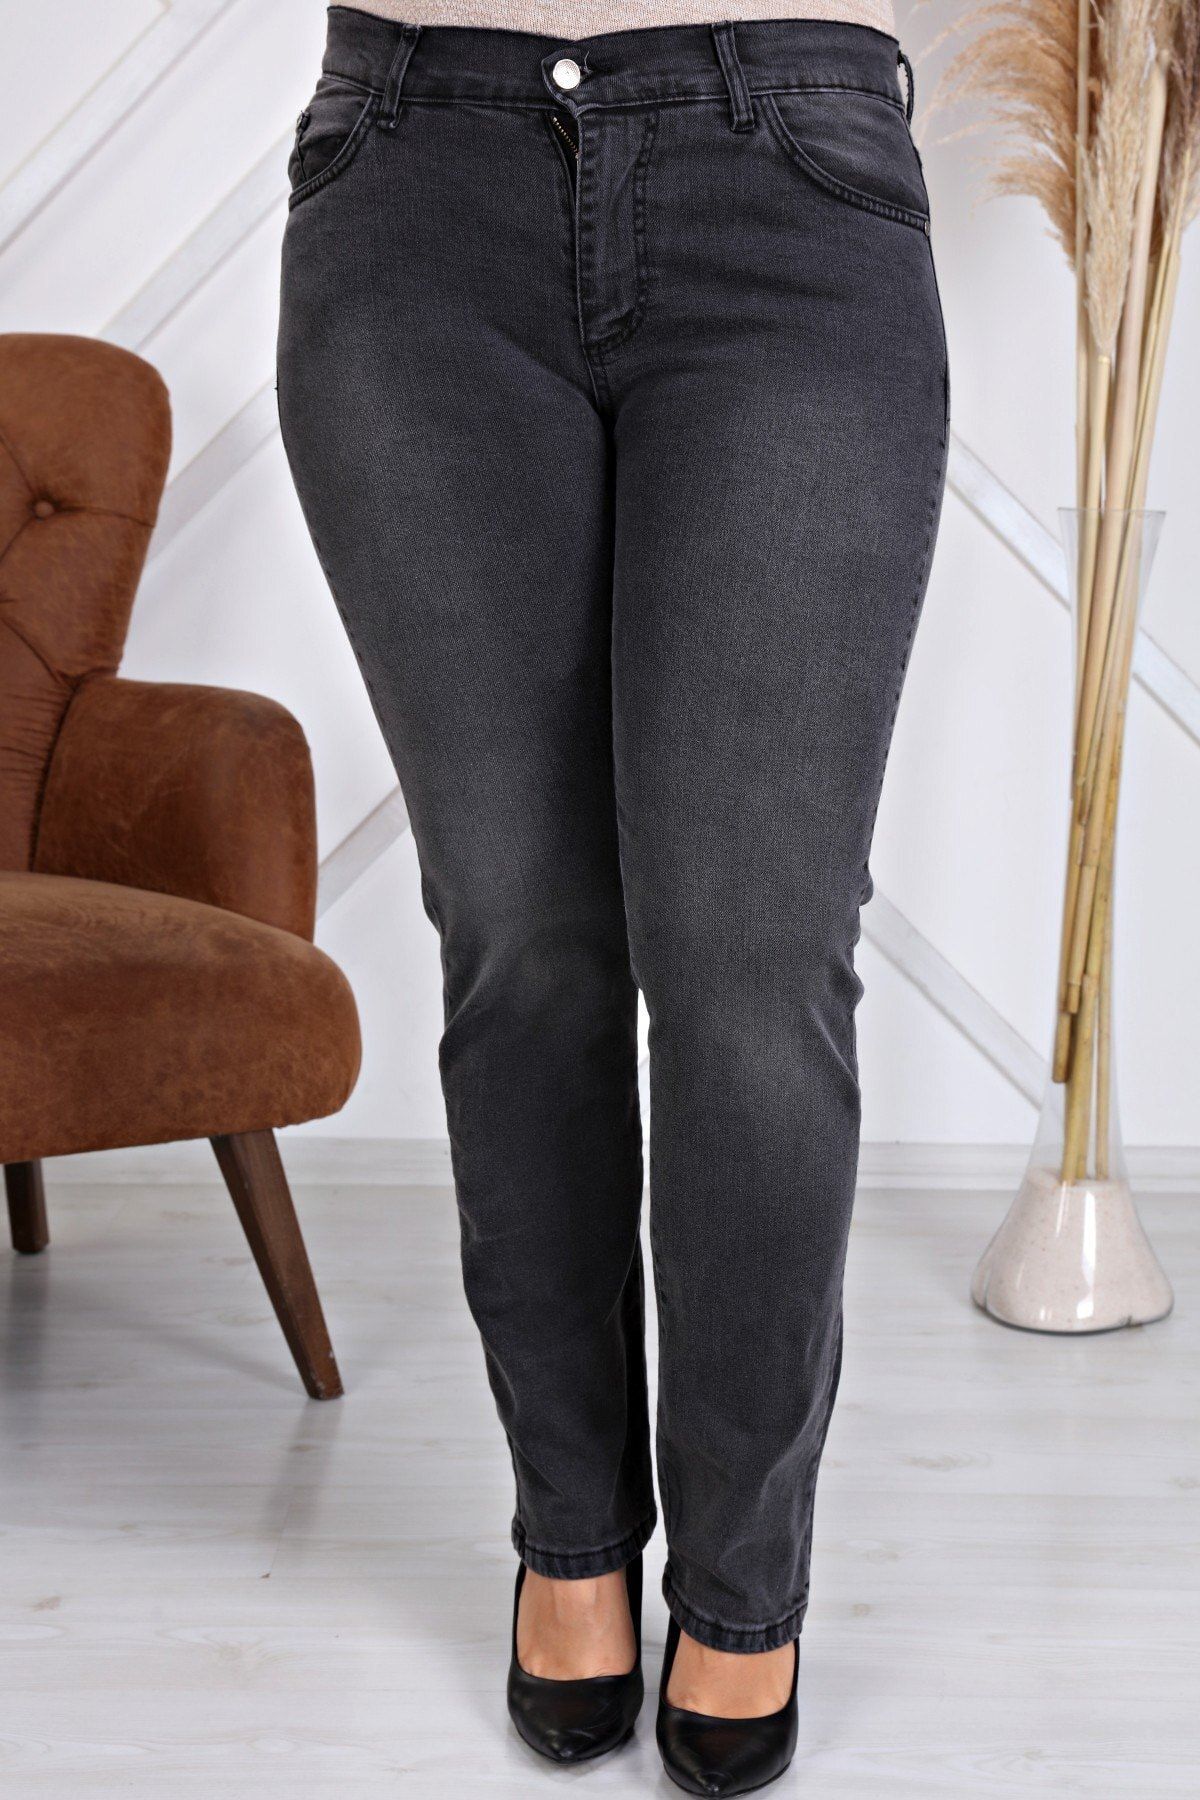 Gül Moda Kadın Antrasit Yüksek Bel Boru Paça Kot Pantolon Jeans G035-1